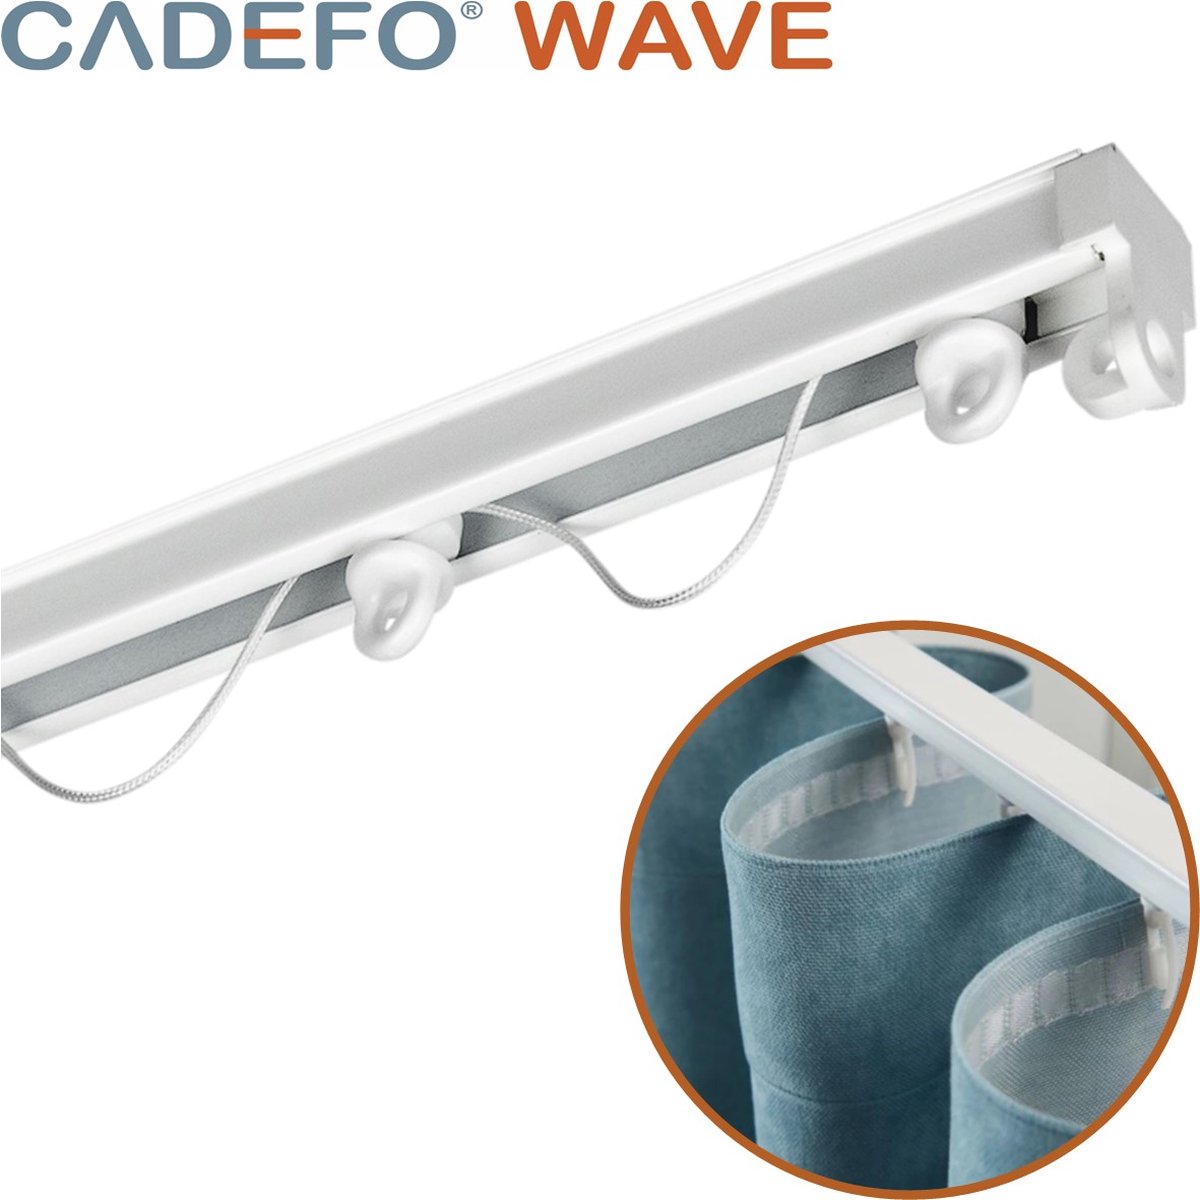 CADEFO WAVE (351 - 400 cm) Gordijnrails - Compleet op maat! - UIT 1 STUK - Leverbaar tot 6 meter - Plafondbevestiging - Lengte 389 cm